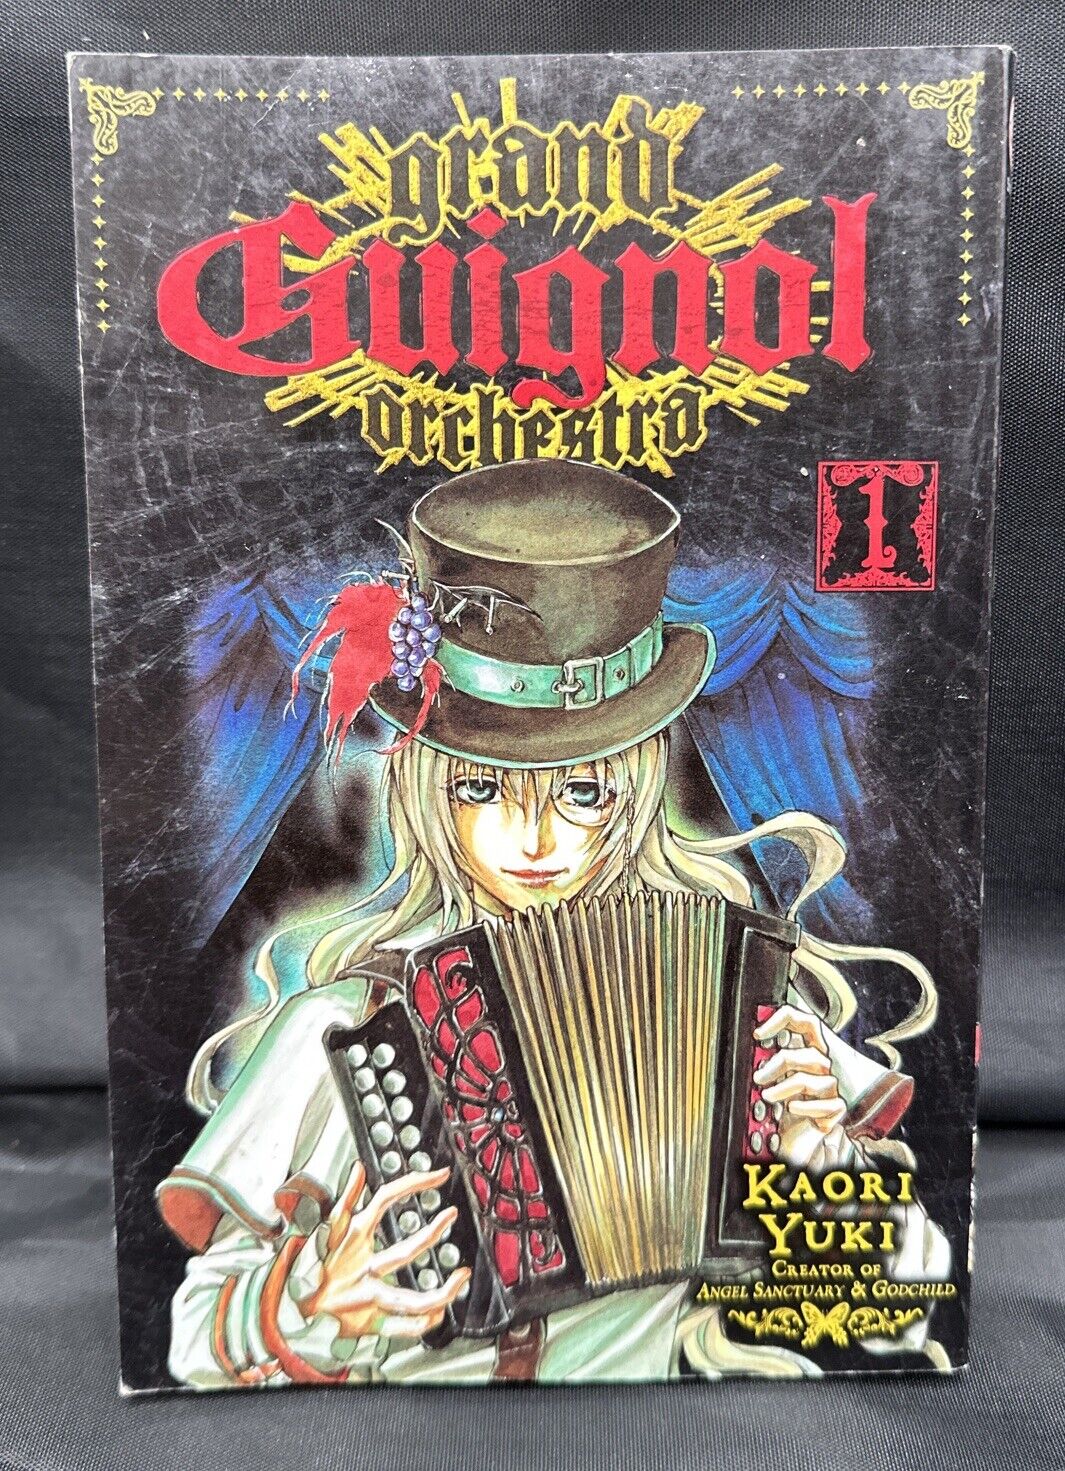 Grand Guignol Orchestra Kaoru Yuki Manga in English Vol. 1 VIZ Media 1st Ed.